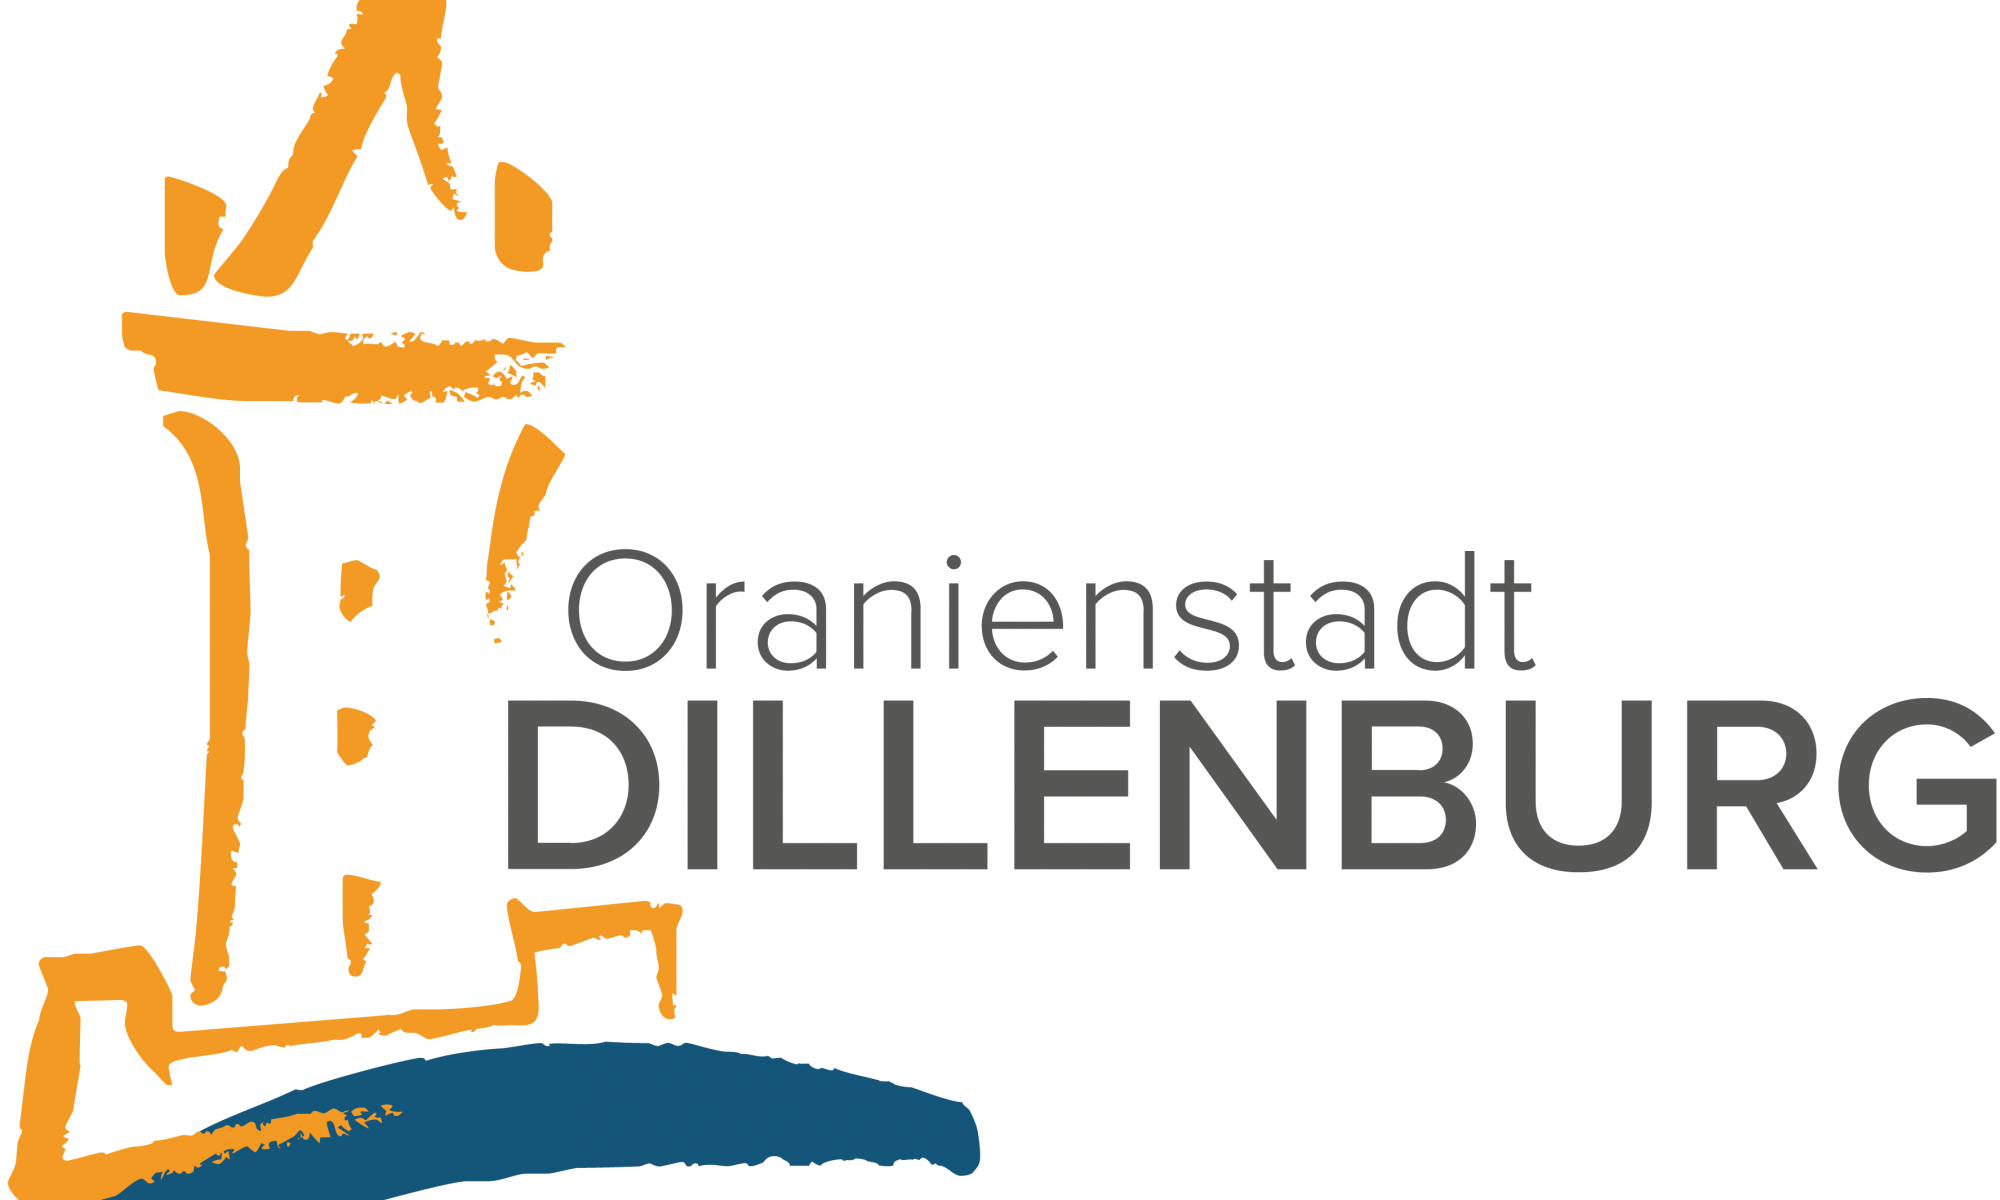 Logo der Oranienstadt Dillenburg. Stilisiert in orange steht der Wilhelmsturm auf der linken Bildseite, darunter ist in blau, wie mit einem Pinselstrich gezogen, eine gebogene blaue Linie zu sehen, die den Fluss Dill darstellen soll. Rechts neben dem orangenen Wilhelmsturm stehen in dunkelgrauer Schrift die Worte Oranienstadt Dillenburg.